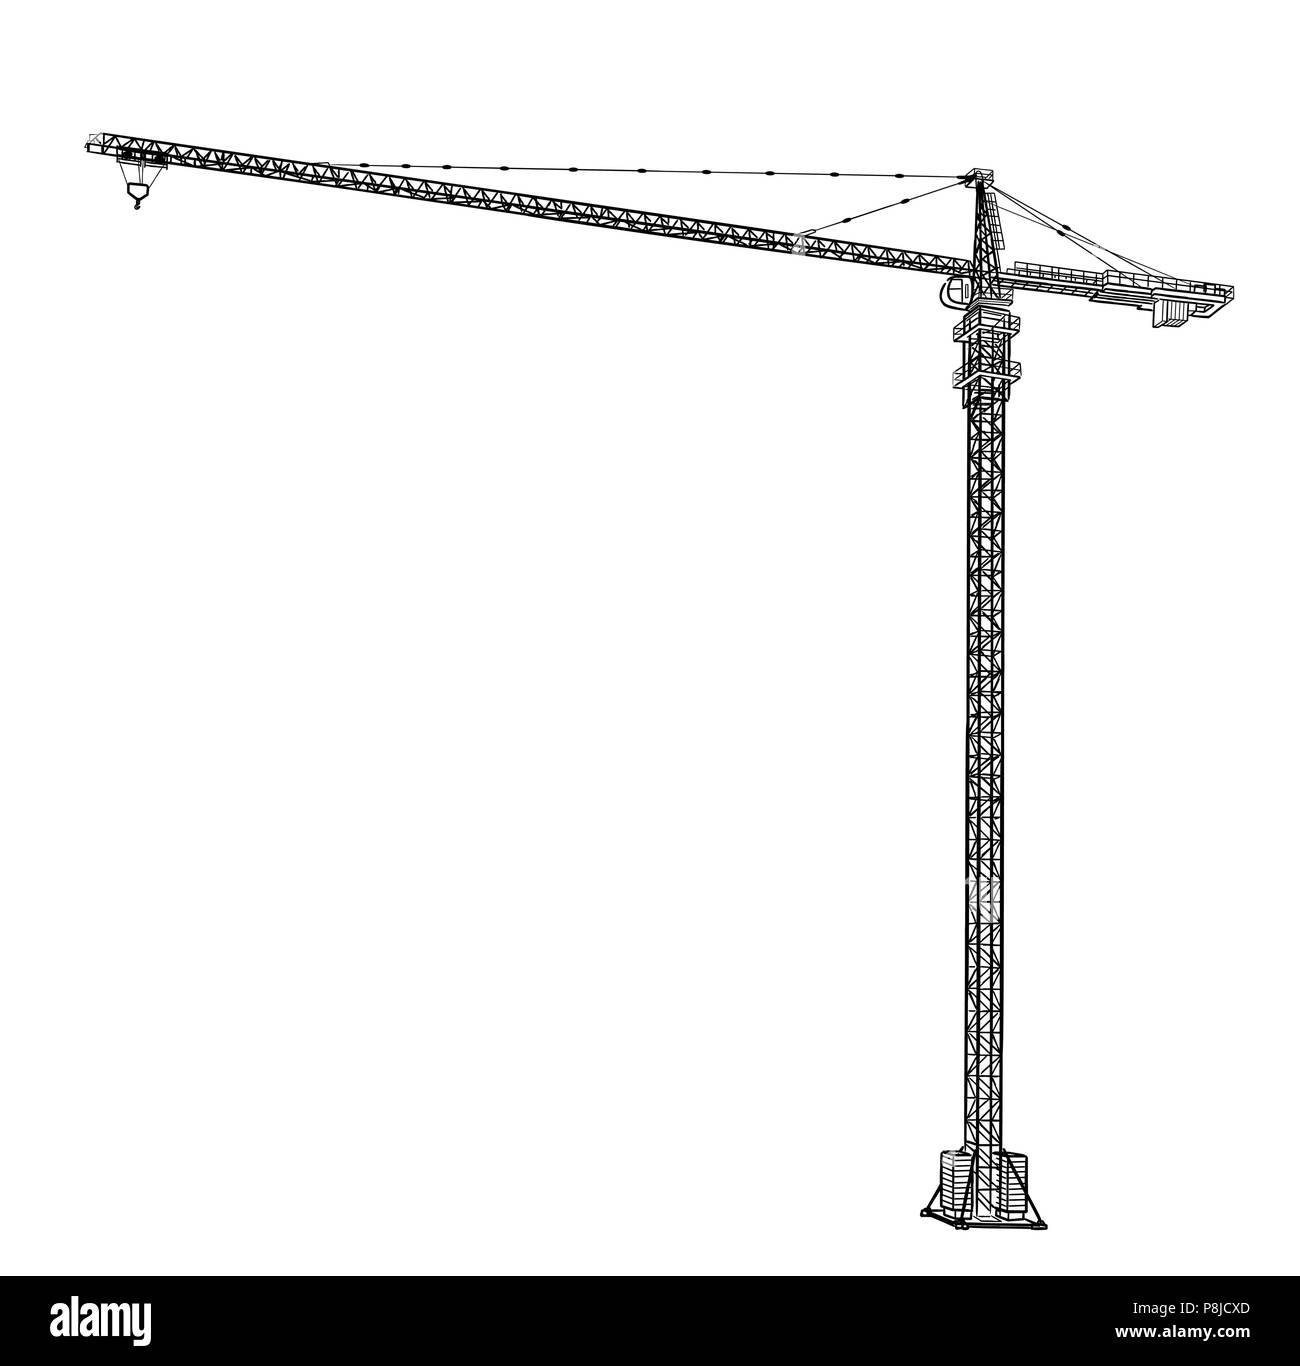 Tower construction crane. Stock Vector